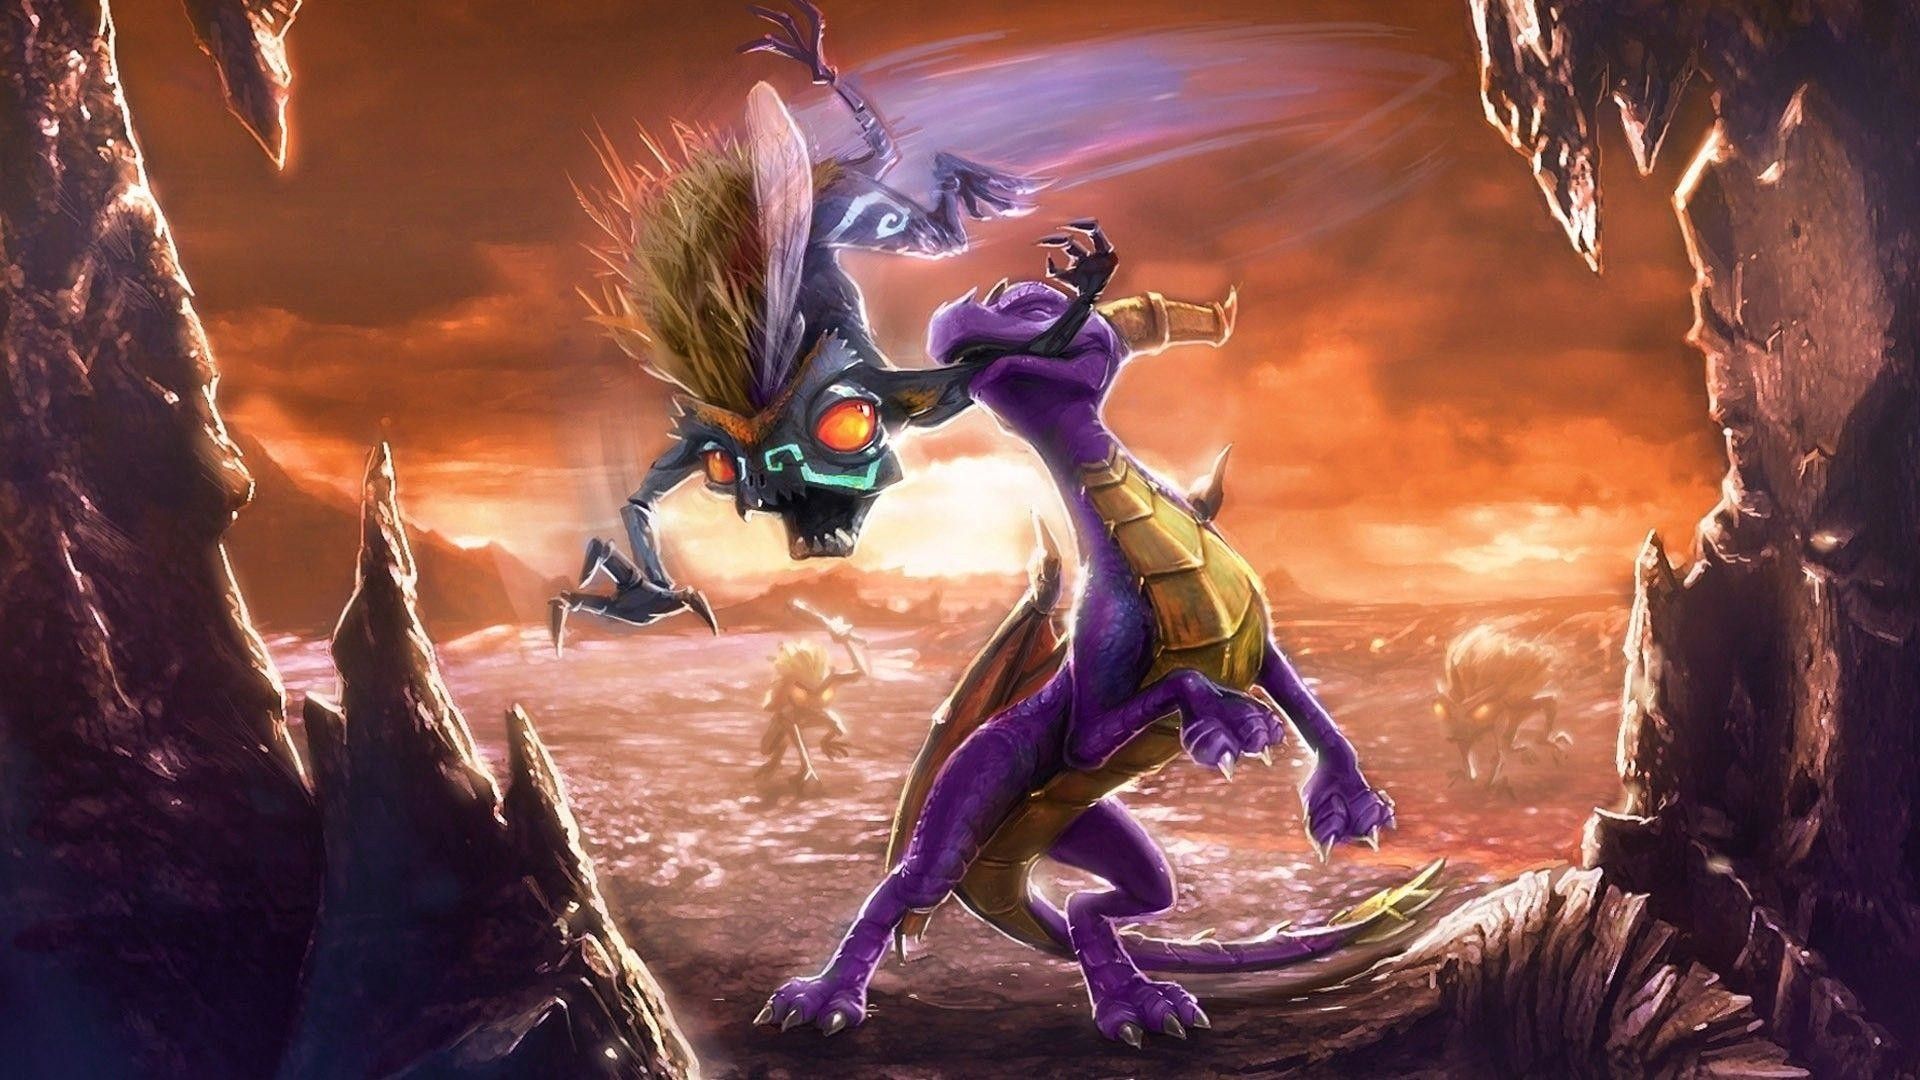 Spyro the Dragon Wallpaper